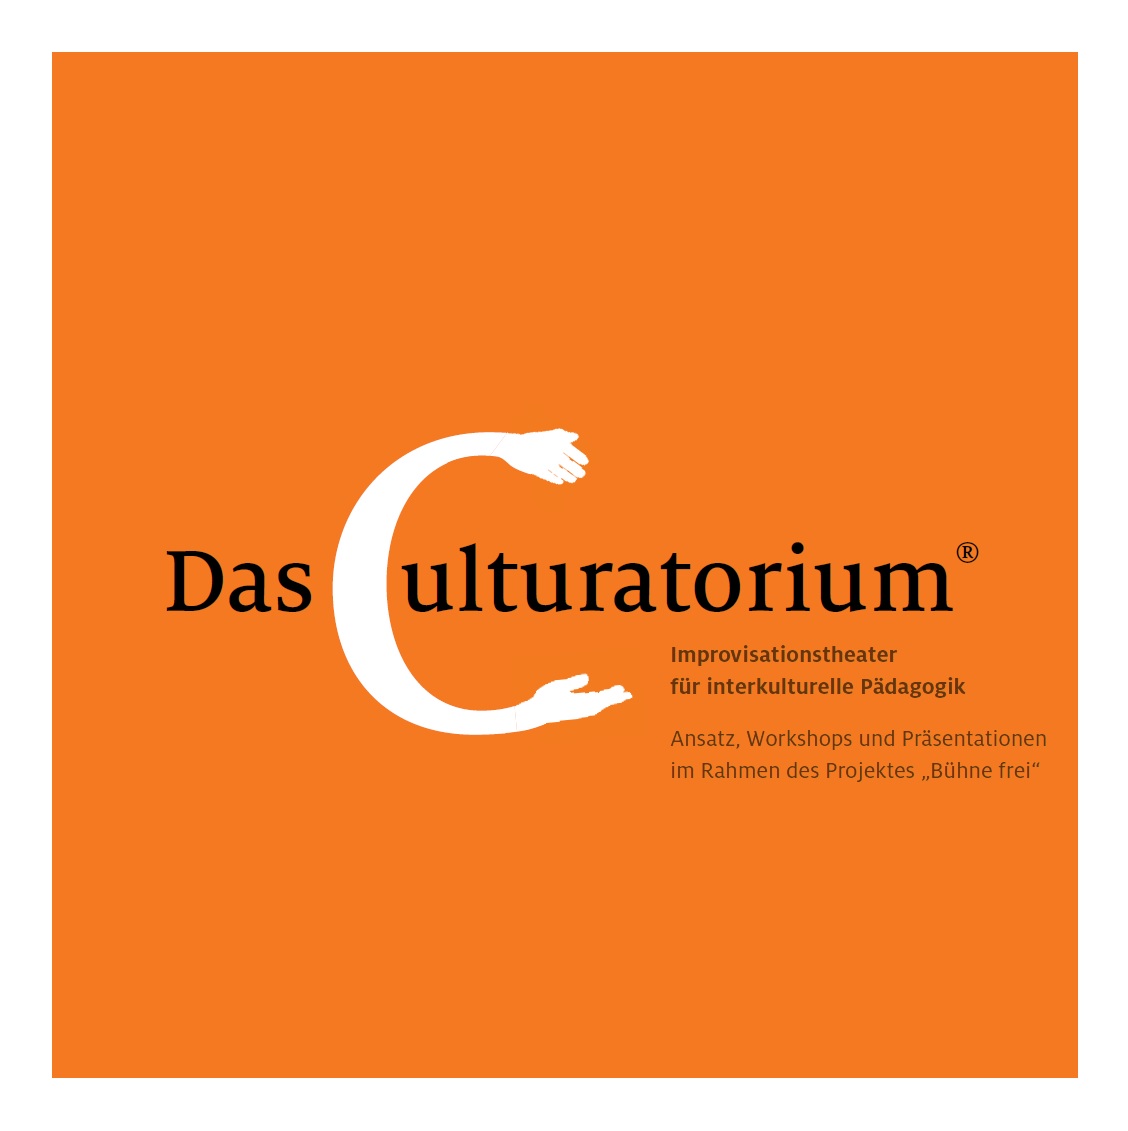 Der Hintergrund des Bildes ist orange auf dem mit schwarzer Schrift geschrieben steht: Das Culturatorium - Ansatz, Workshops und Praesentationen. Das C ist größer alle anderen Buchstaben mit weißer Farbe geschrieben und an dessen Enden bilden sich Haende